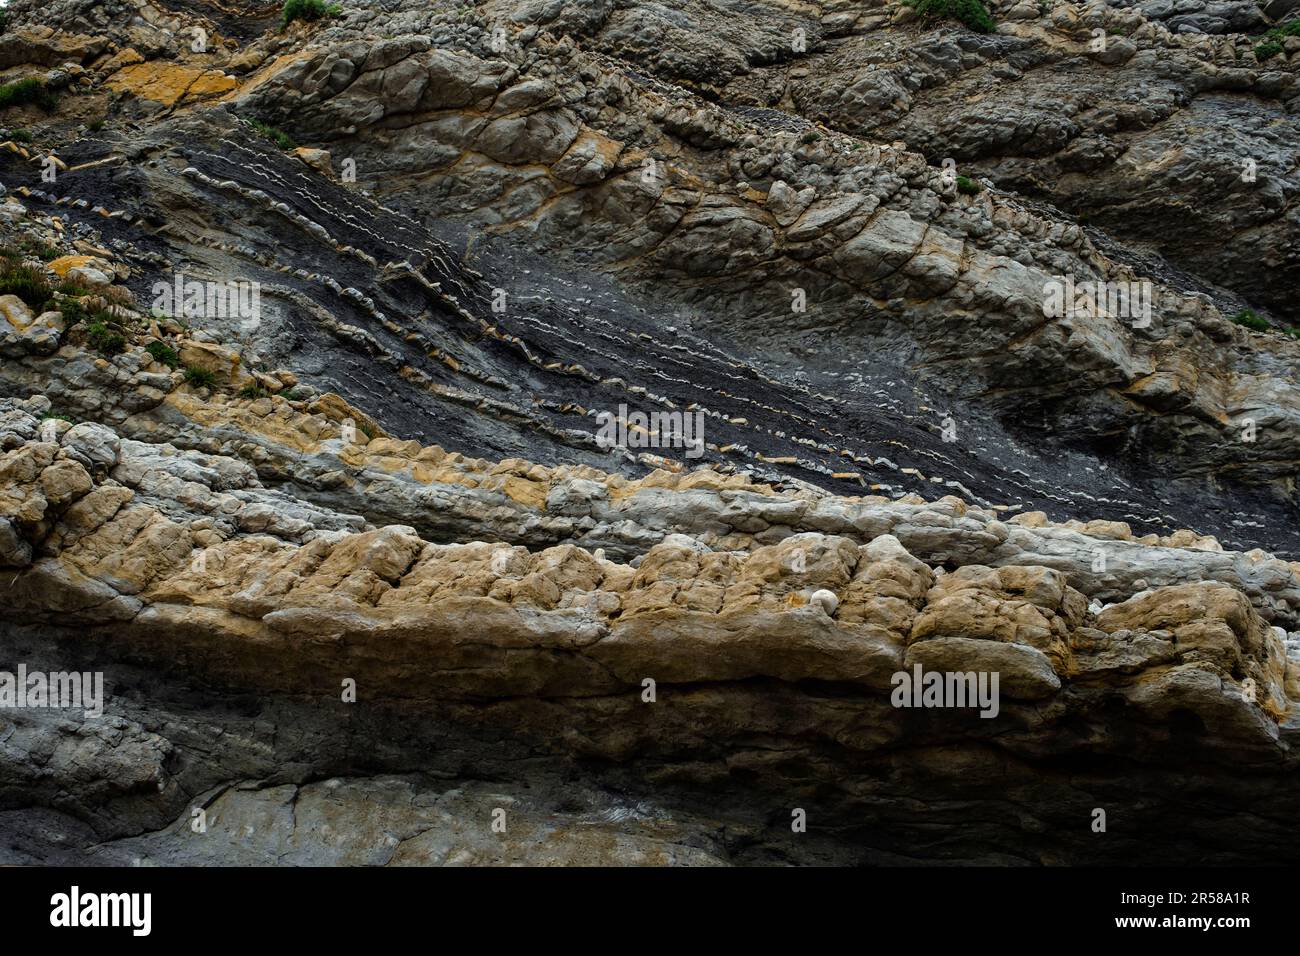 Détail de la stratification rythmique des roches sédimentaires d'une falaise déposées en couches horizontales. Broken Coast of Liencres, Cantabrie, Espagne. Banque D'Images